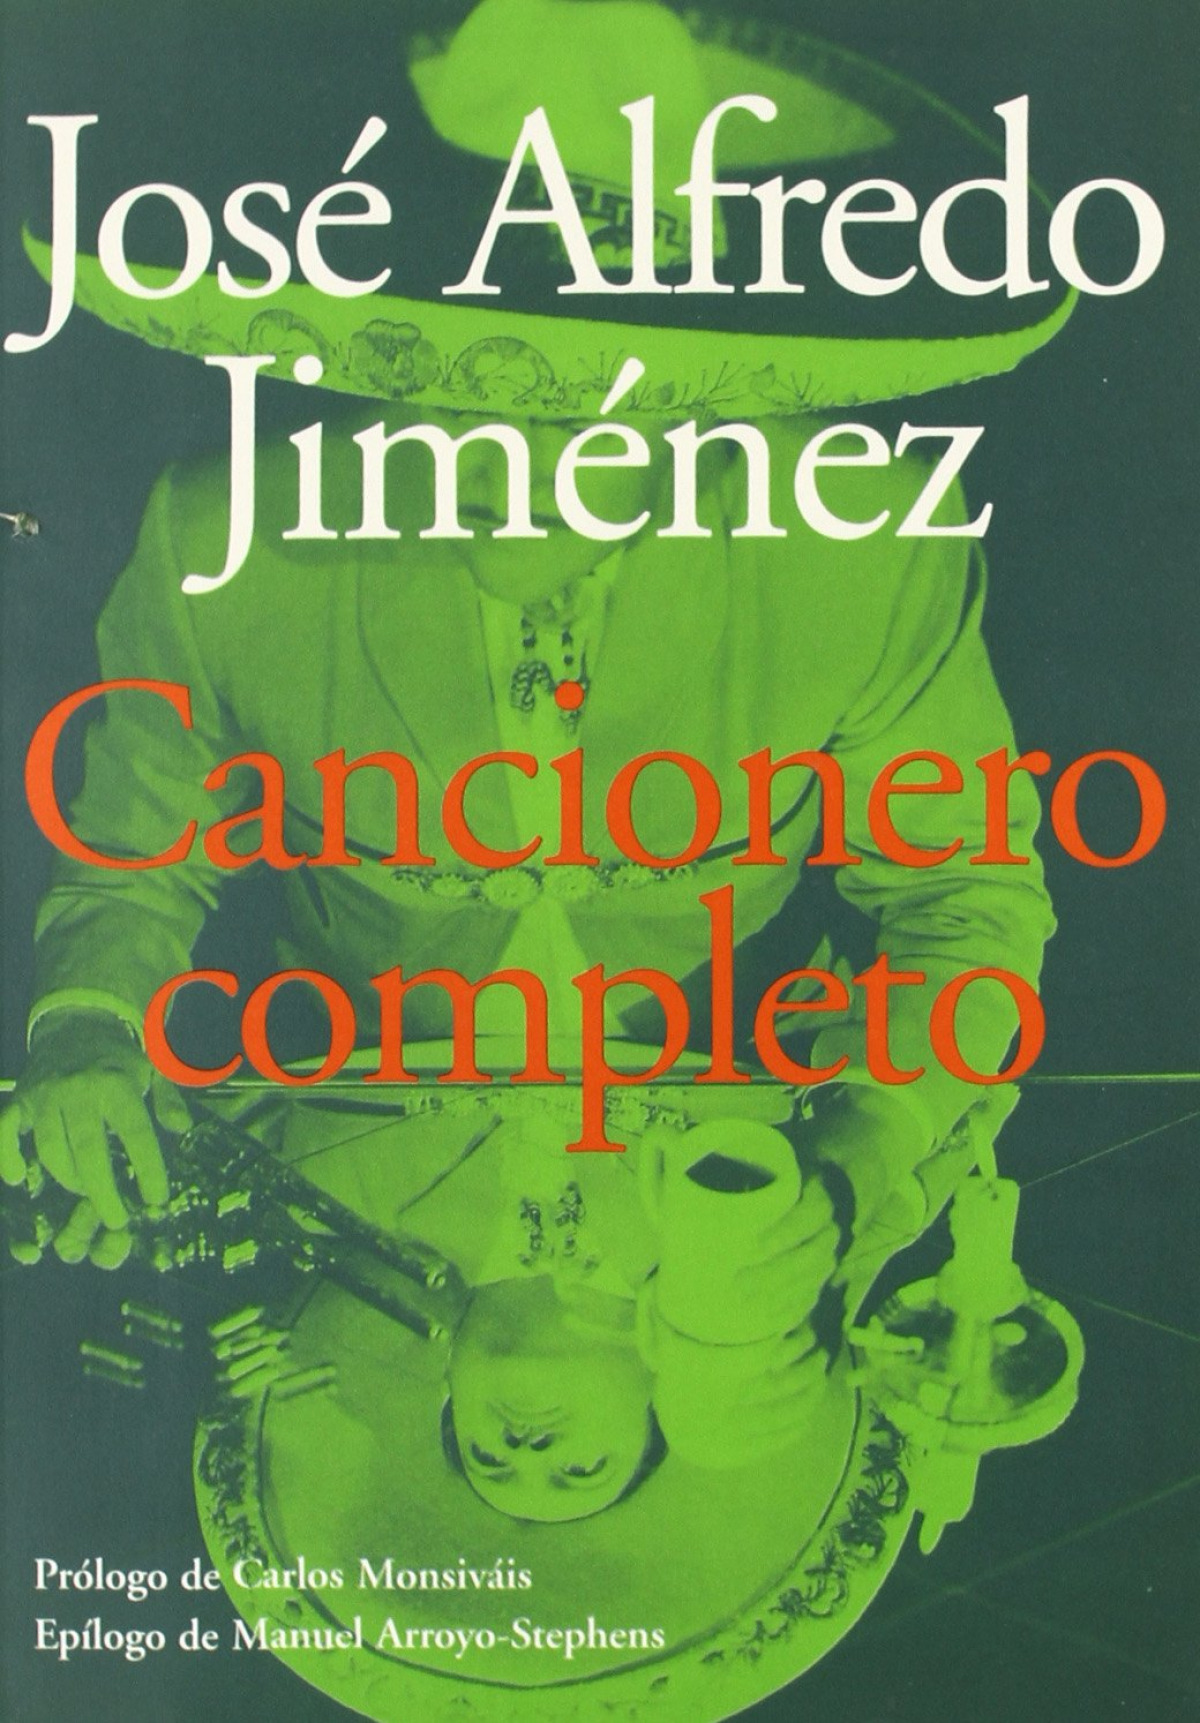 Cancionero completo - Jimenez, Jose A.